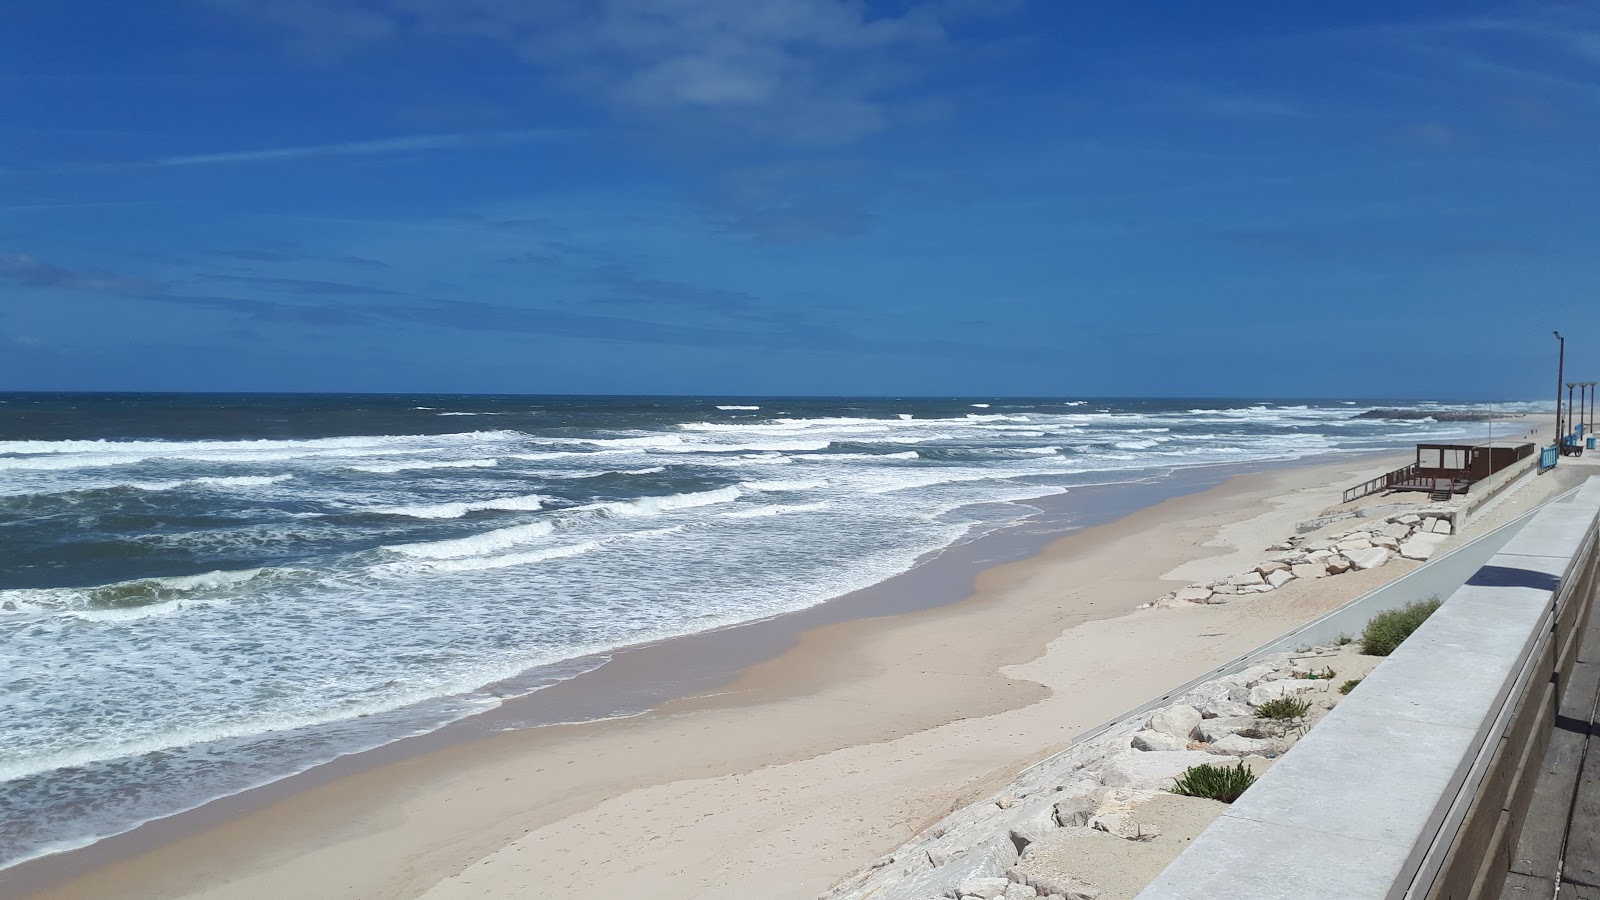 Foto von Praia da Vieira - beliebter Ort unter Entspannungskennern